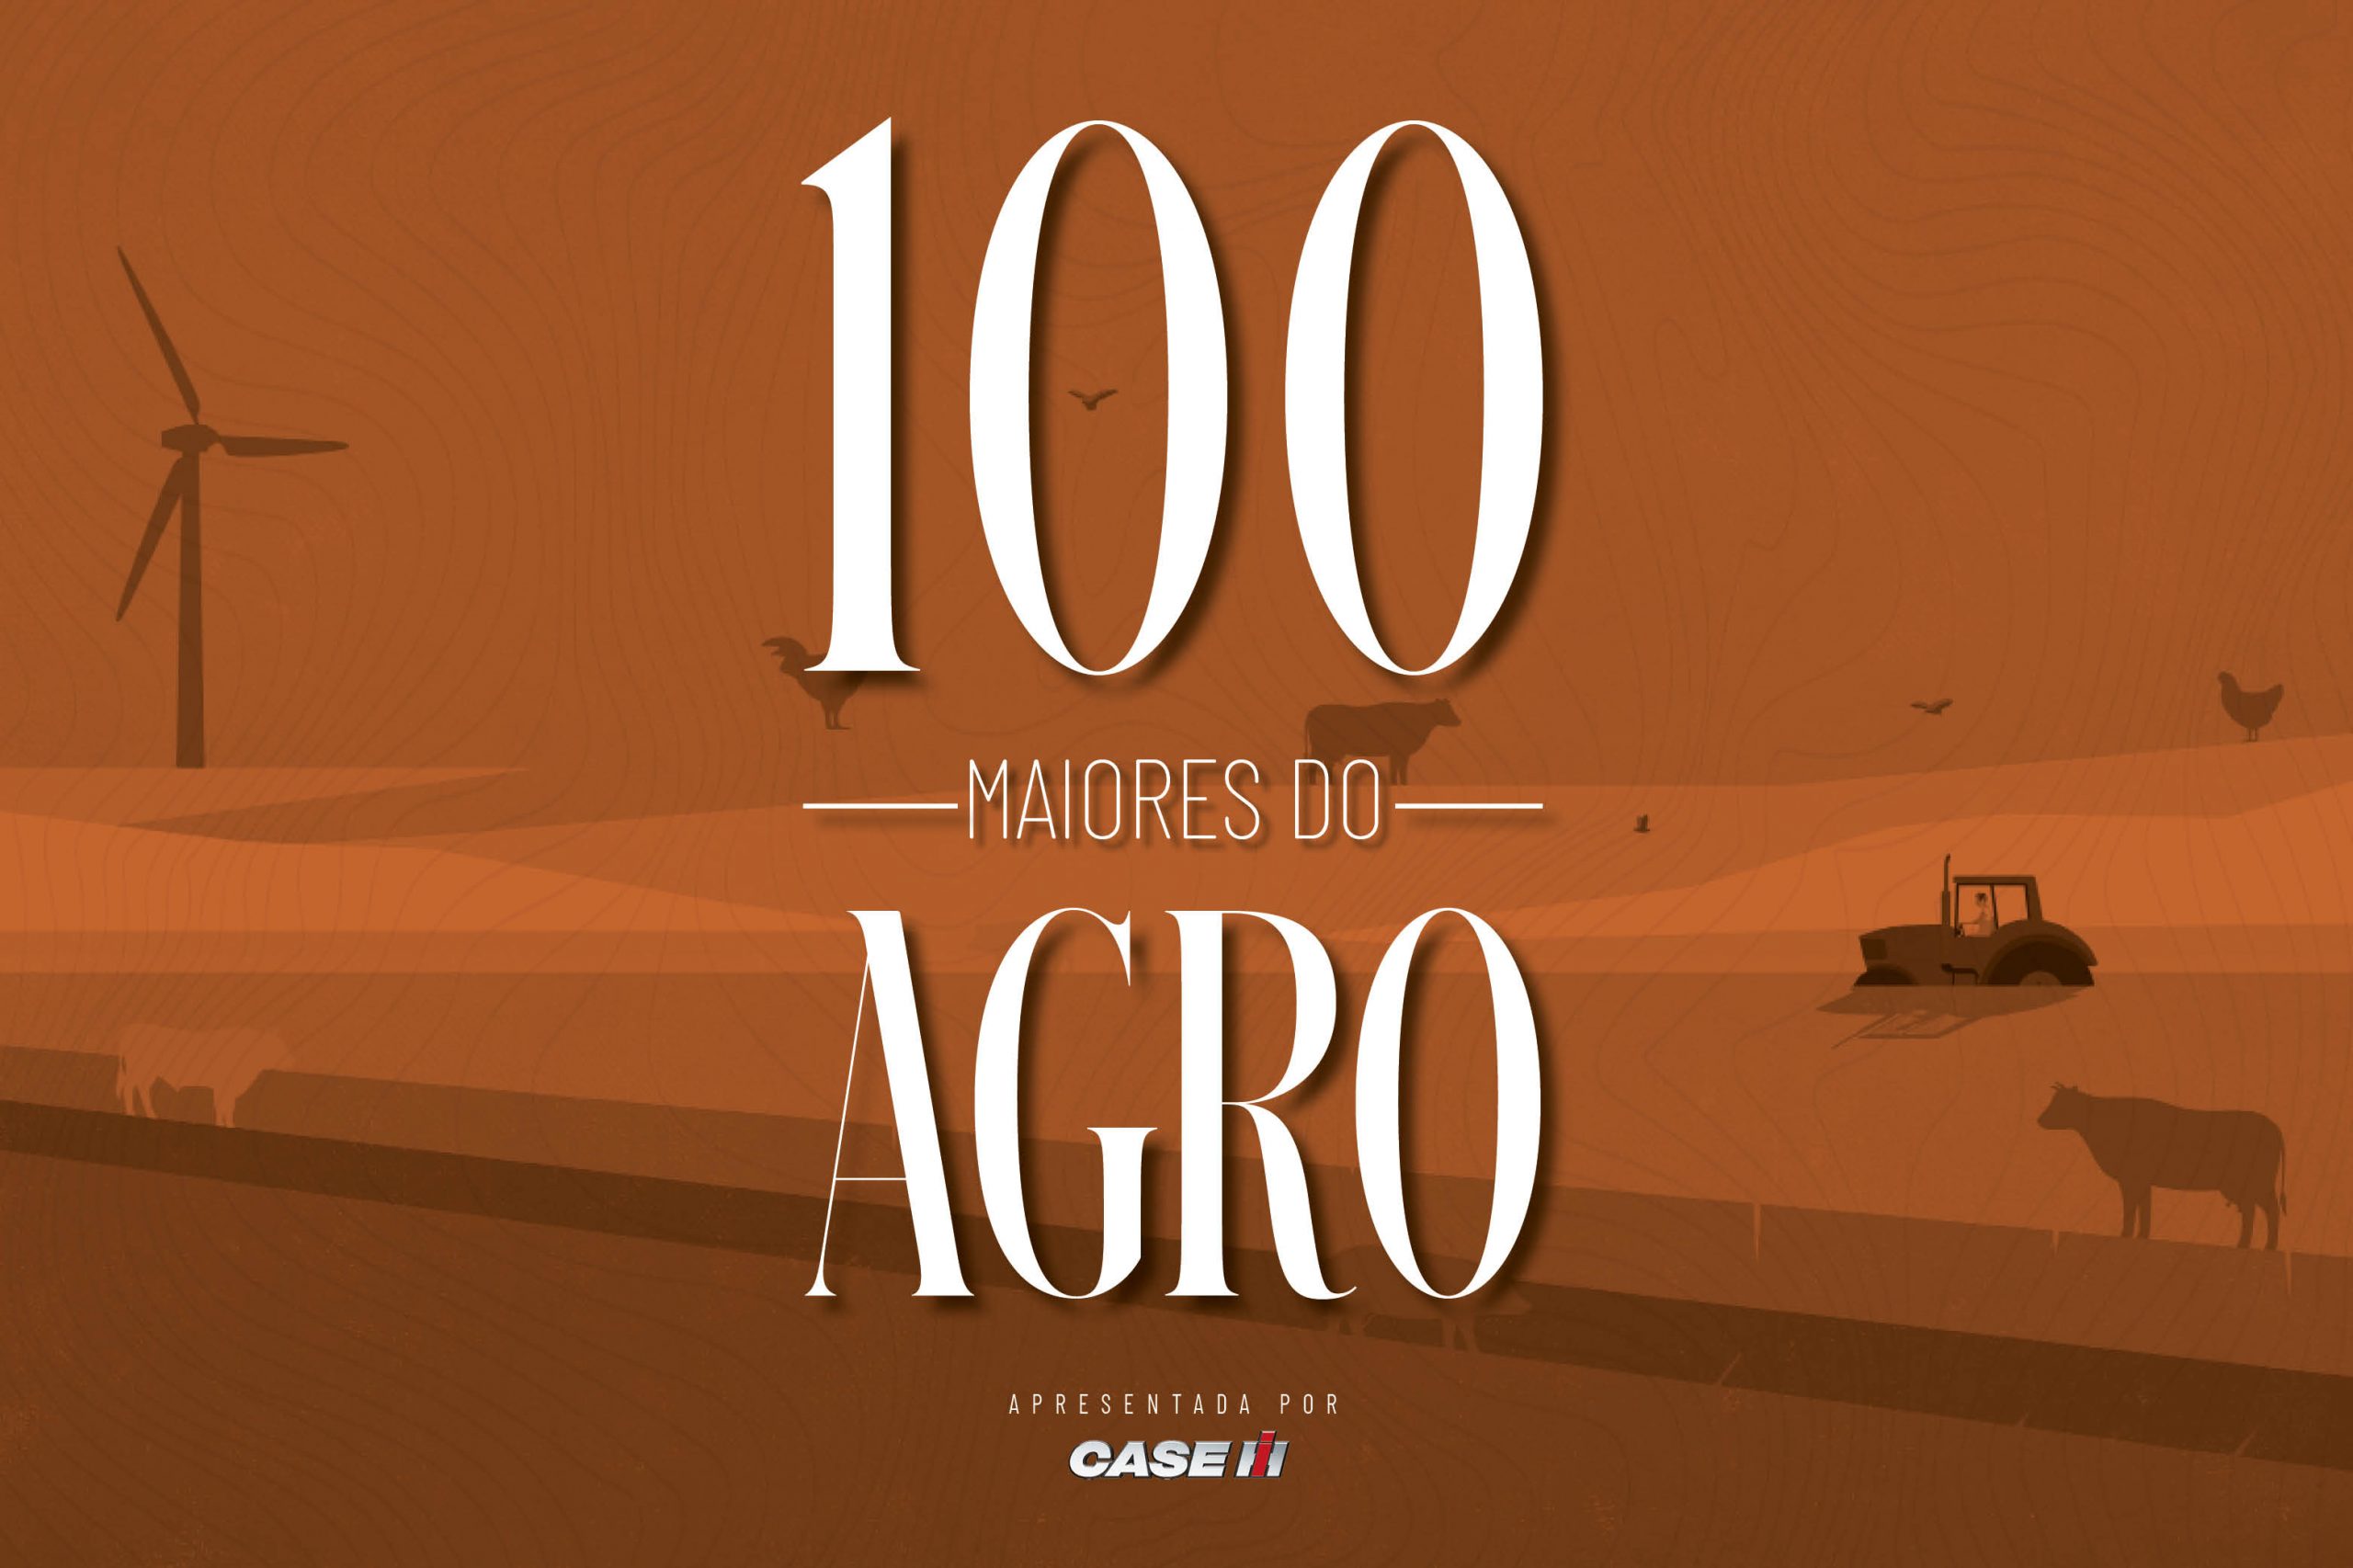 Clube Agro Brasil amplia seu programa de fidelidade - Forbes